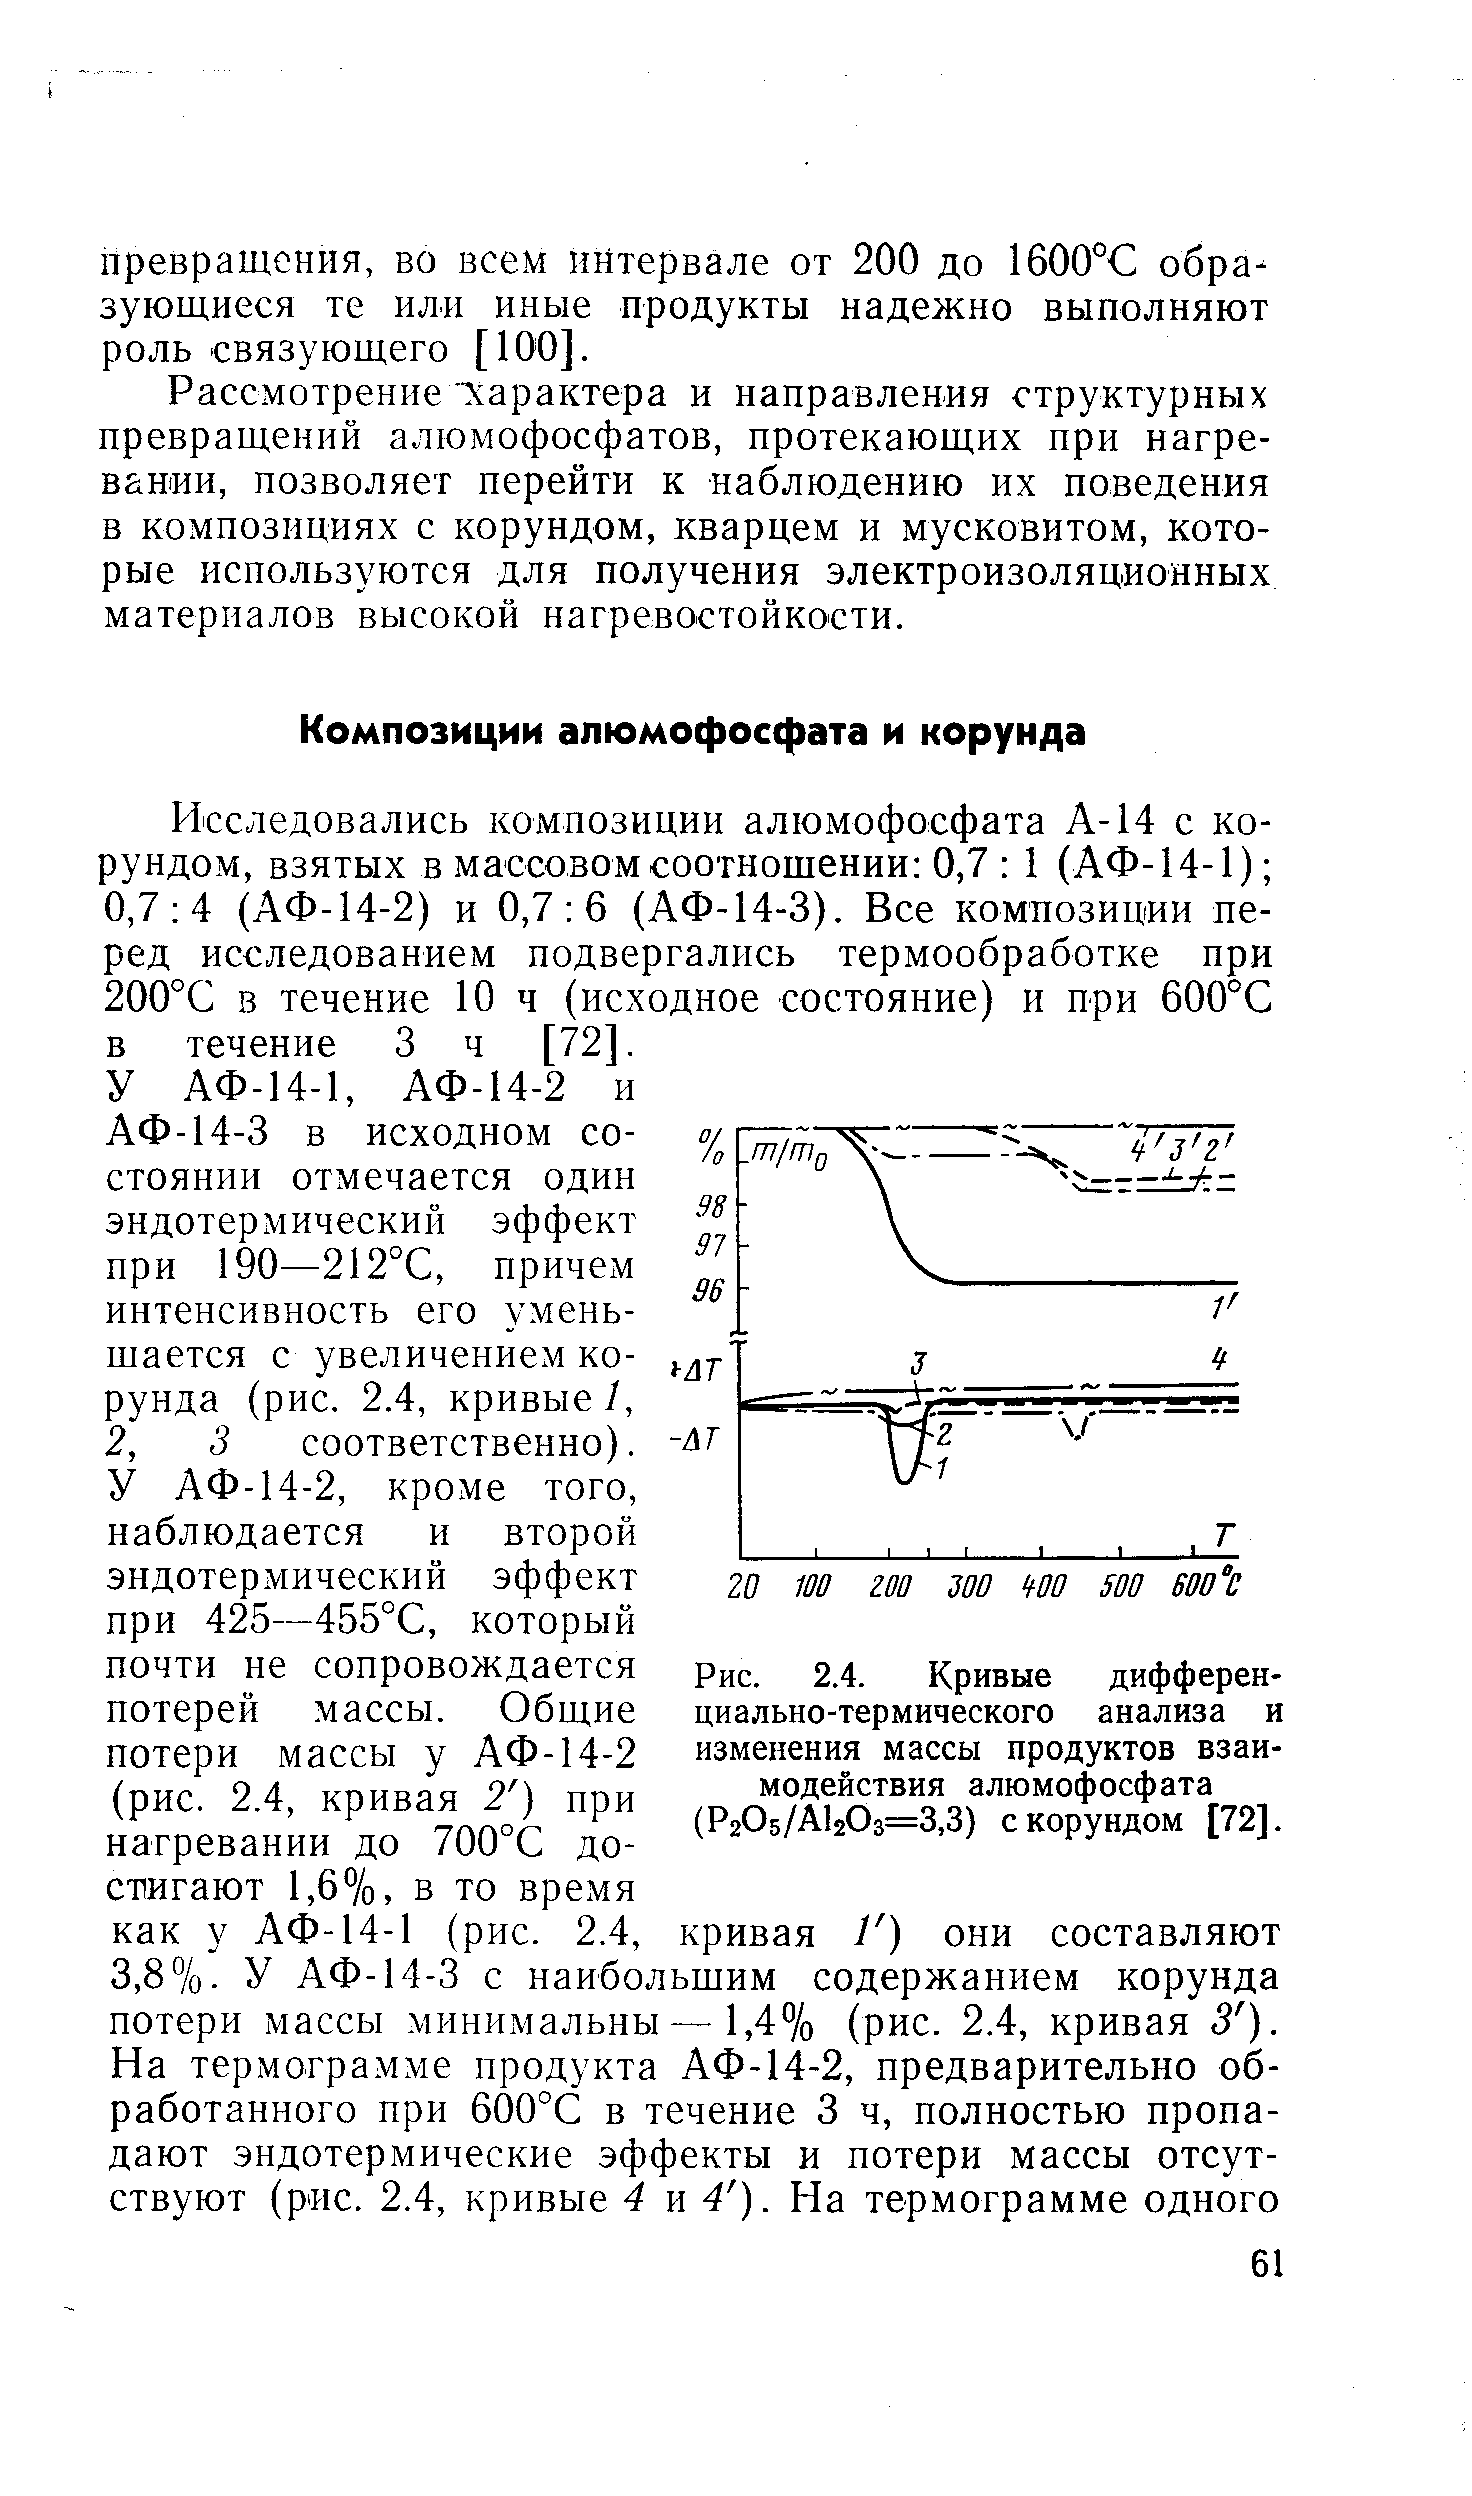 Рис. 2.4. Кривые дифференциально-термического анализа и изменения массы продуктов взаимодействия алюмофосфата (Р205/А120з=3,3) с корундом [72].
